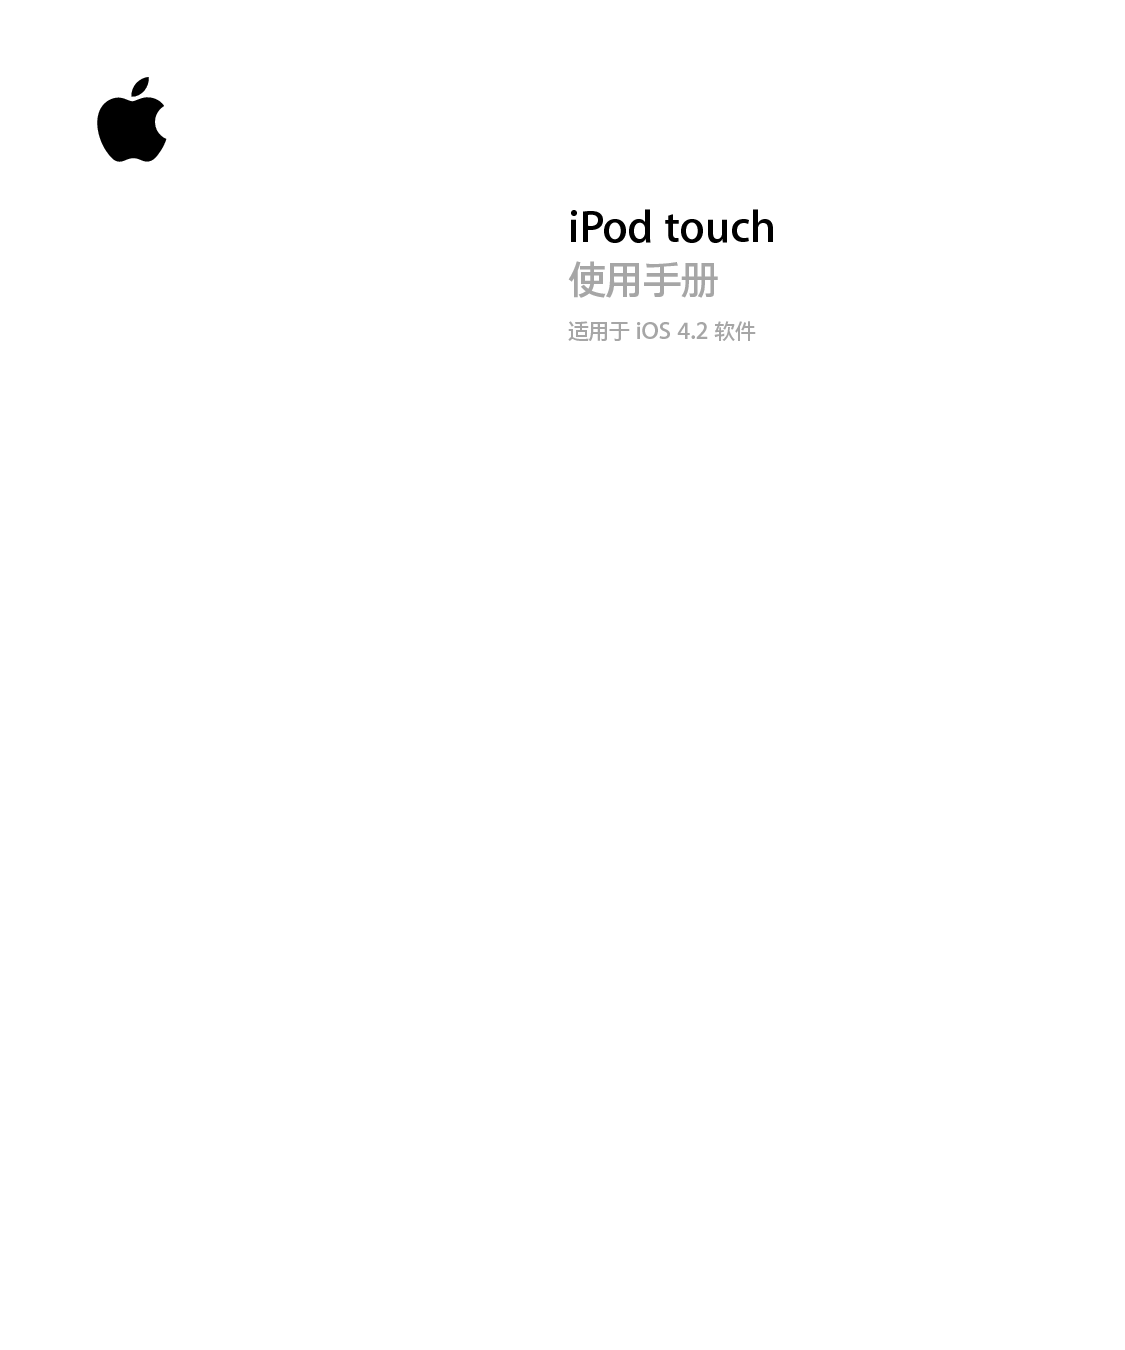 苹果 Apple iPod touch iOS 4.0 使用手册 封面